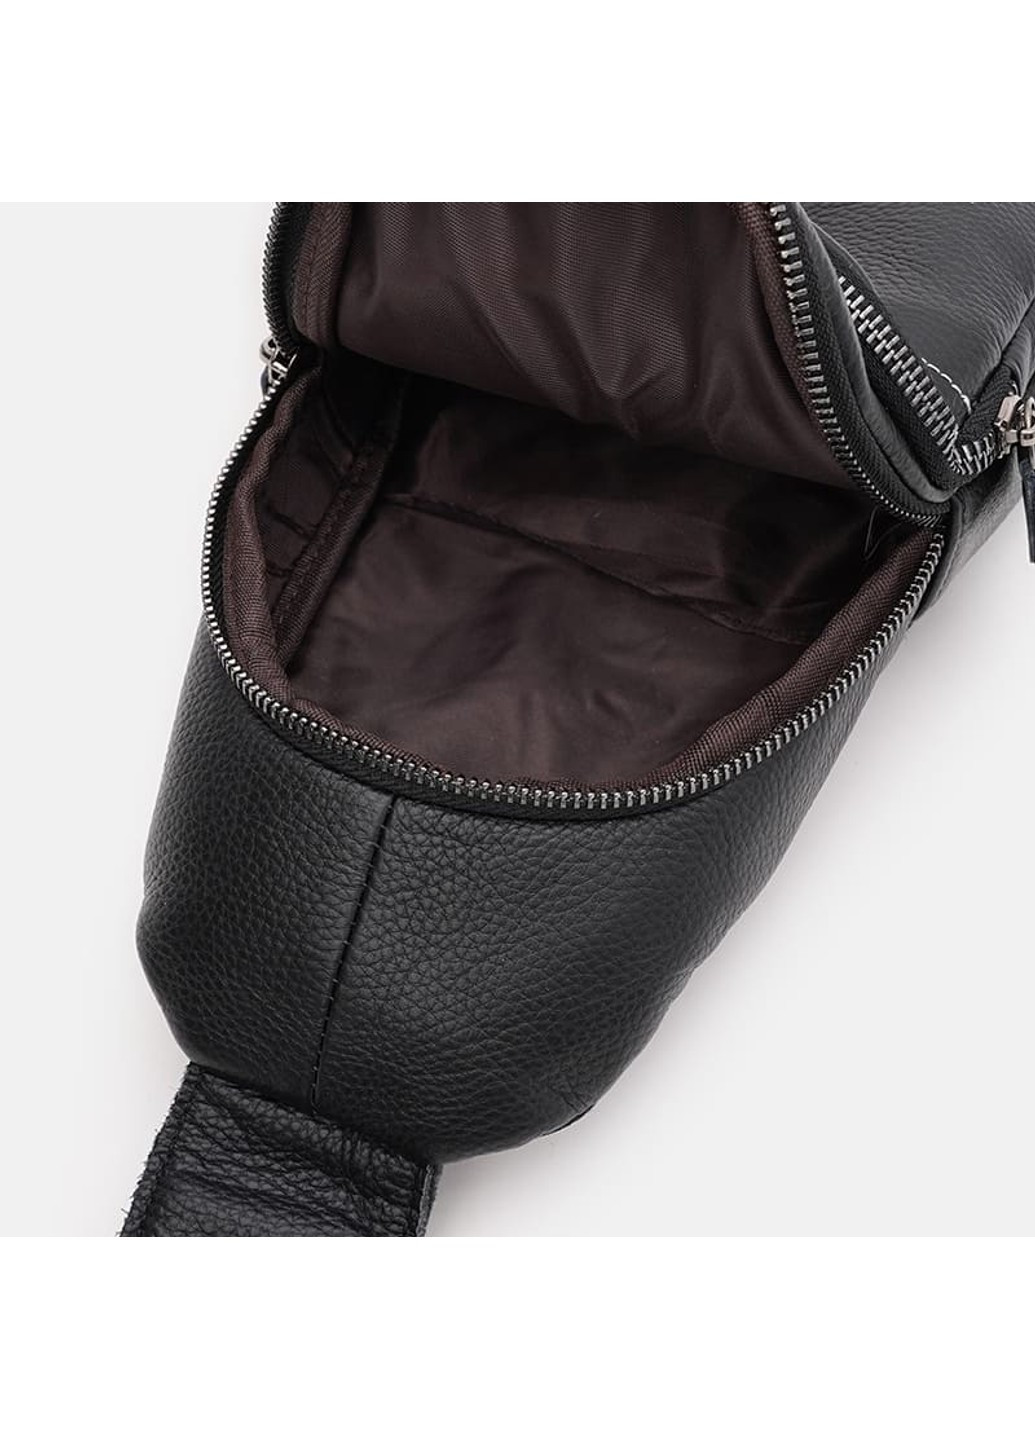 Мужской кожаный рюкзак K1612-11bl-black Keizer (277925969)